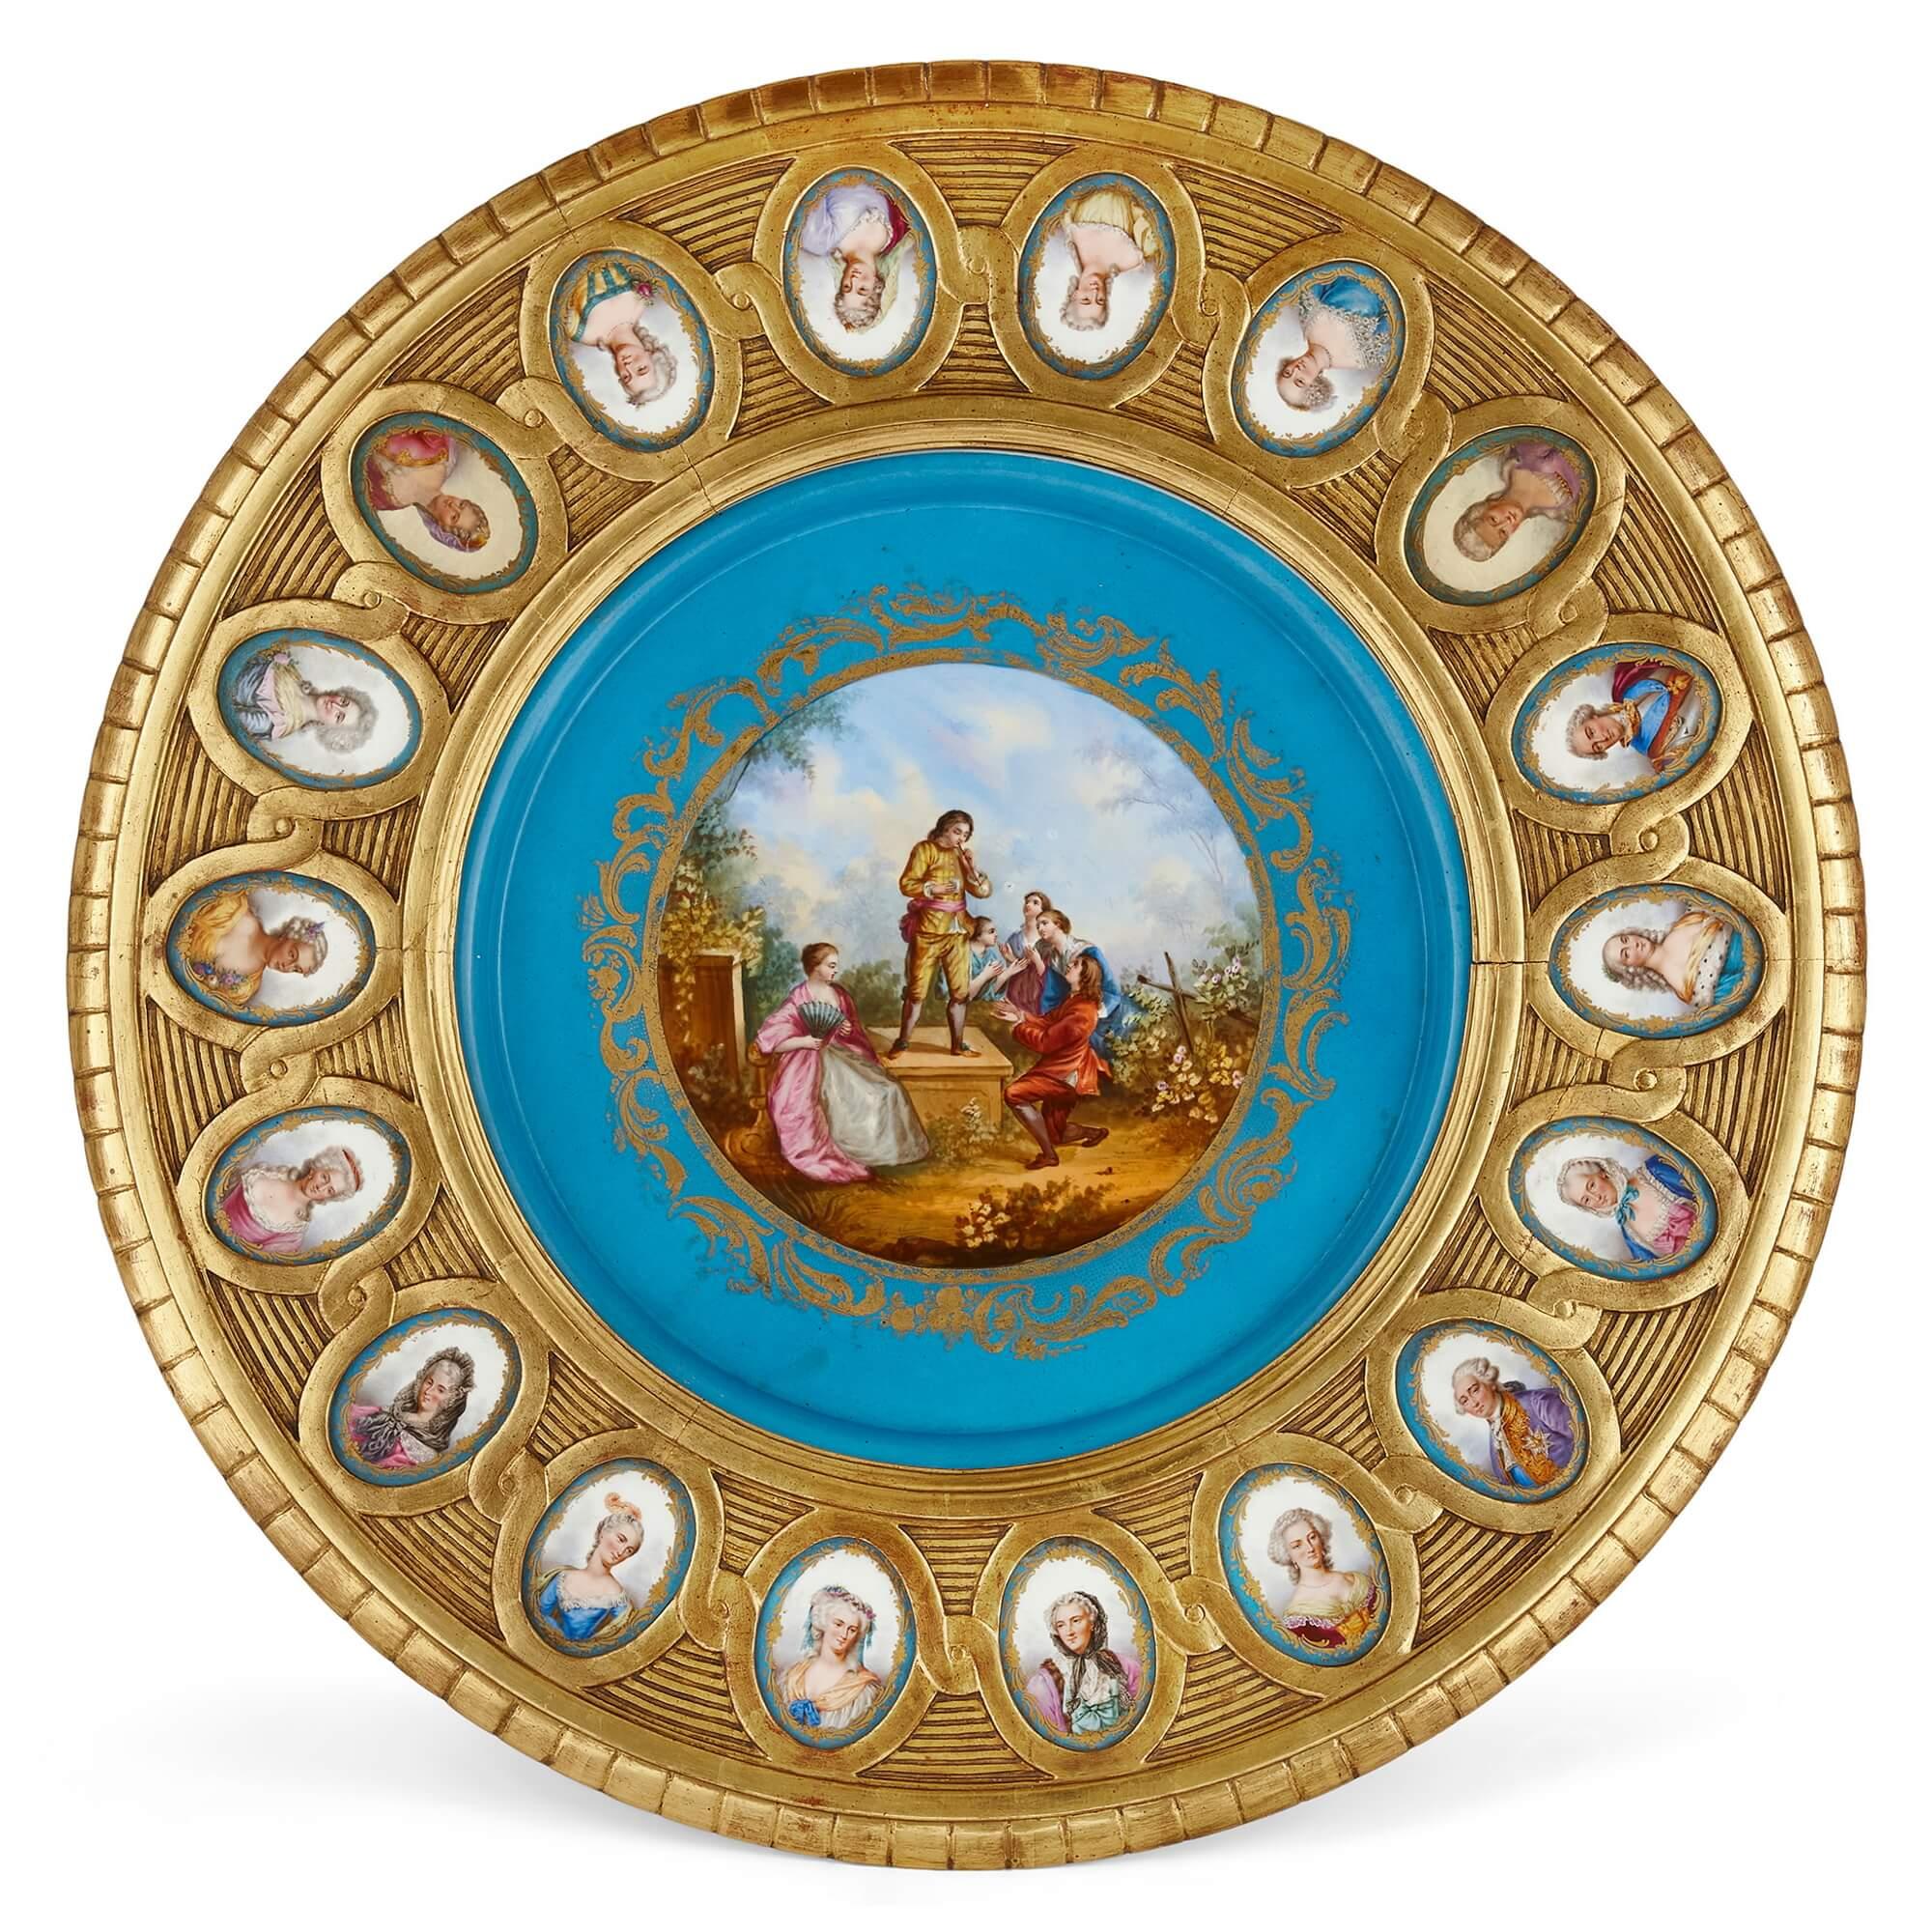 Ein Guéridon aus Goldholz und Porzellan im Sevres-Stil
Französisch, Ende 19. Jahrhundert
78.5 cm hoch und 85 cm im Durchmesser.

Dieses bezaubernde und schöne Guéridon aus dem Frankreich des späten 19. Jahrhunderts ist aus reich verziertem